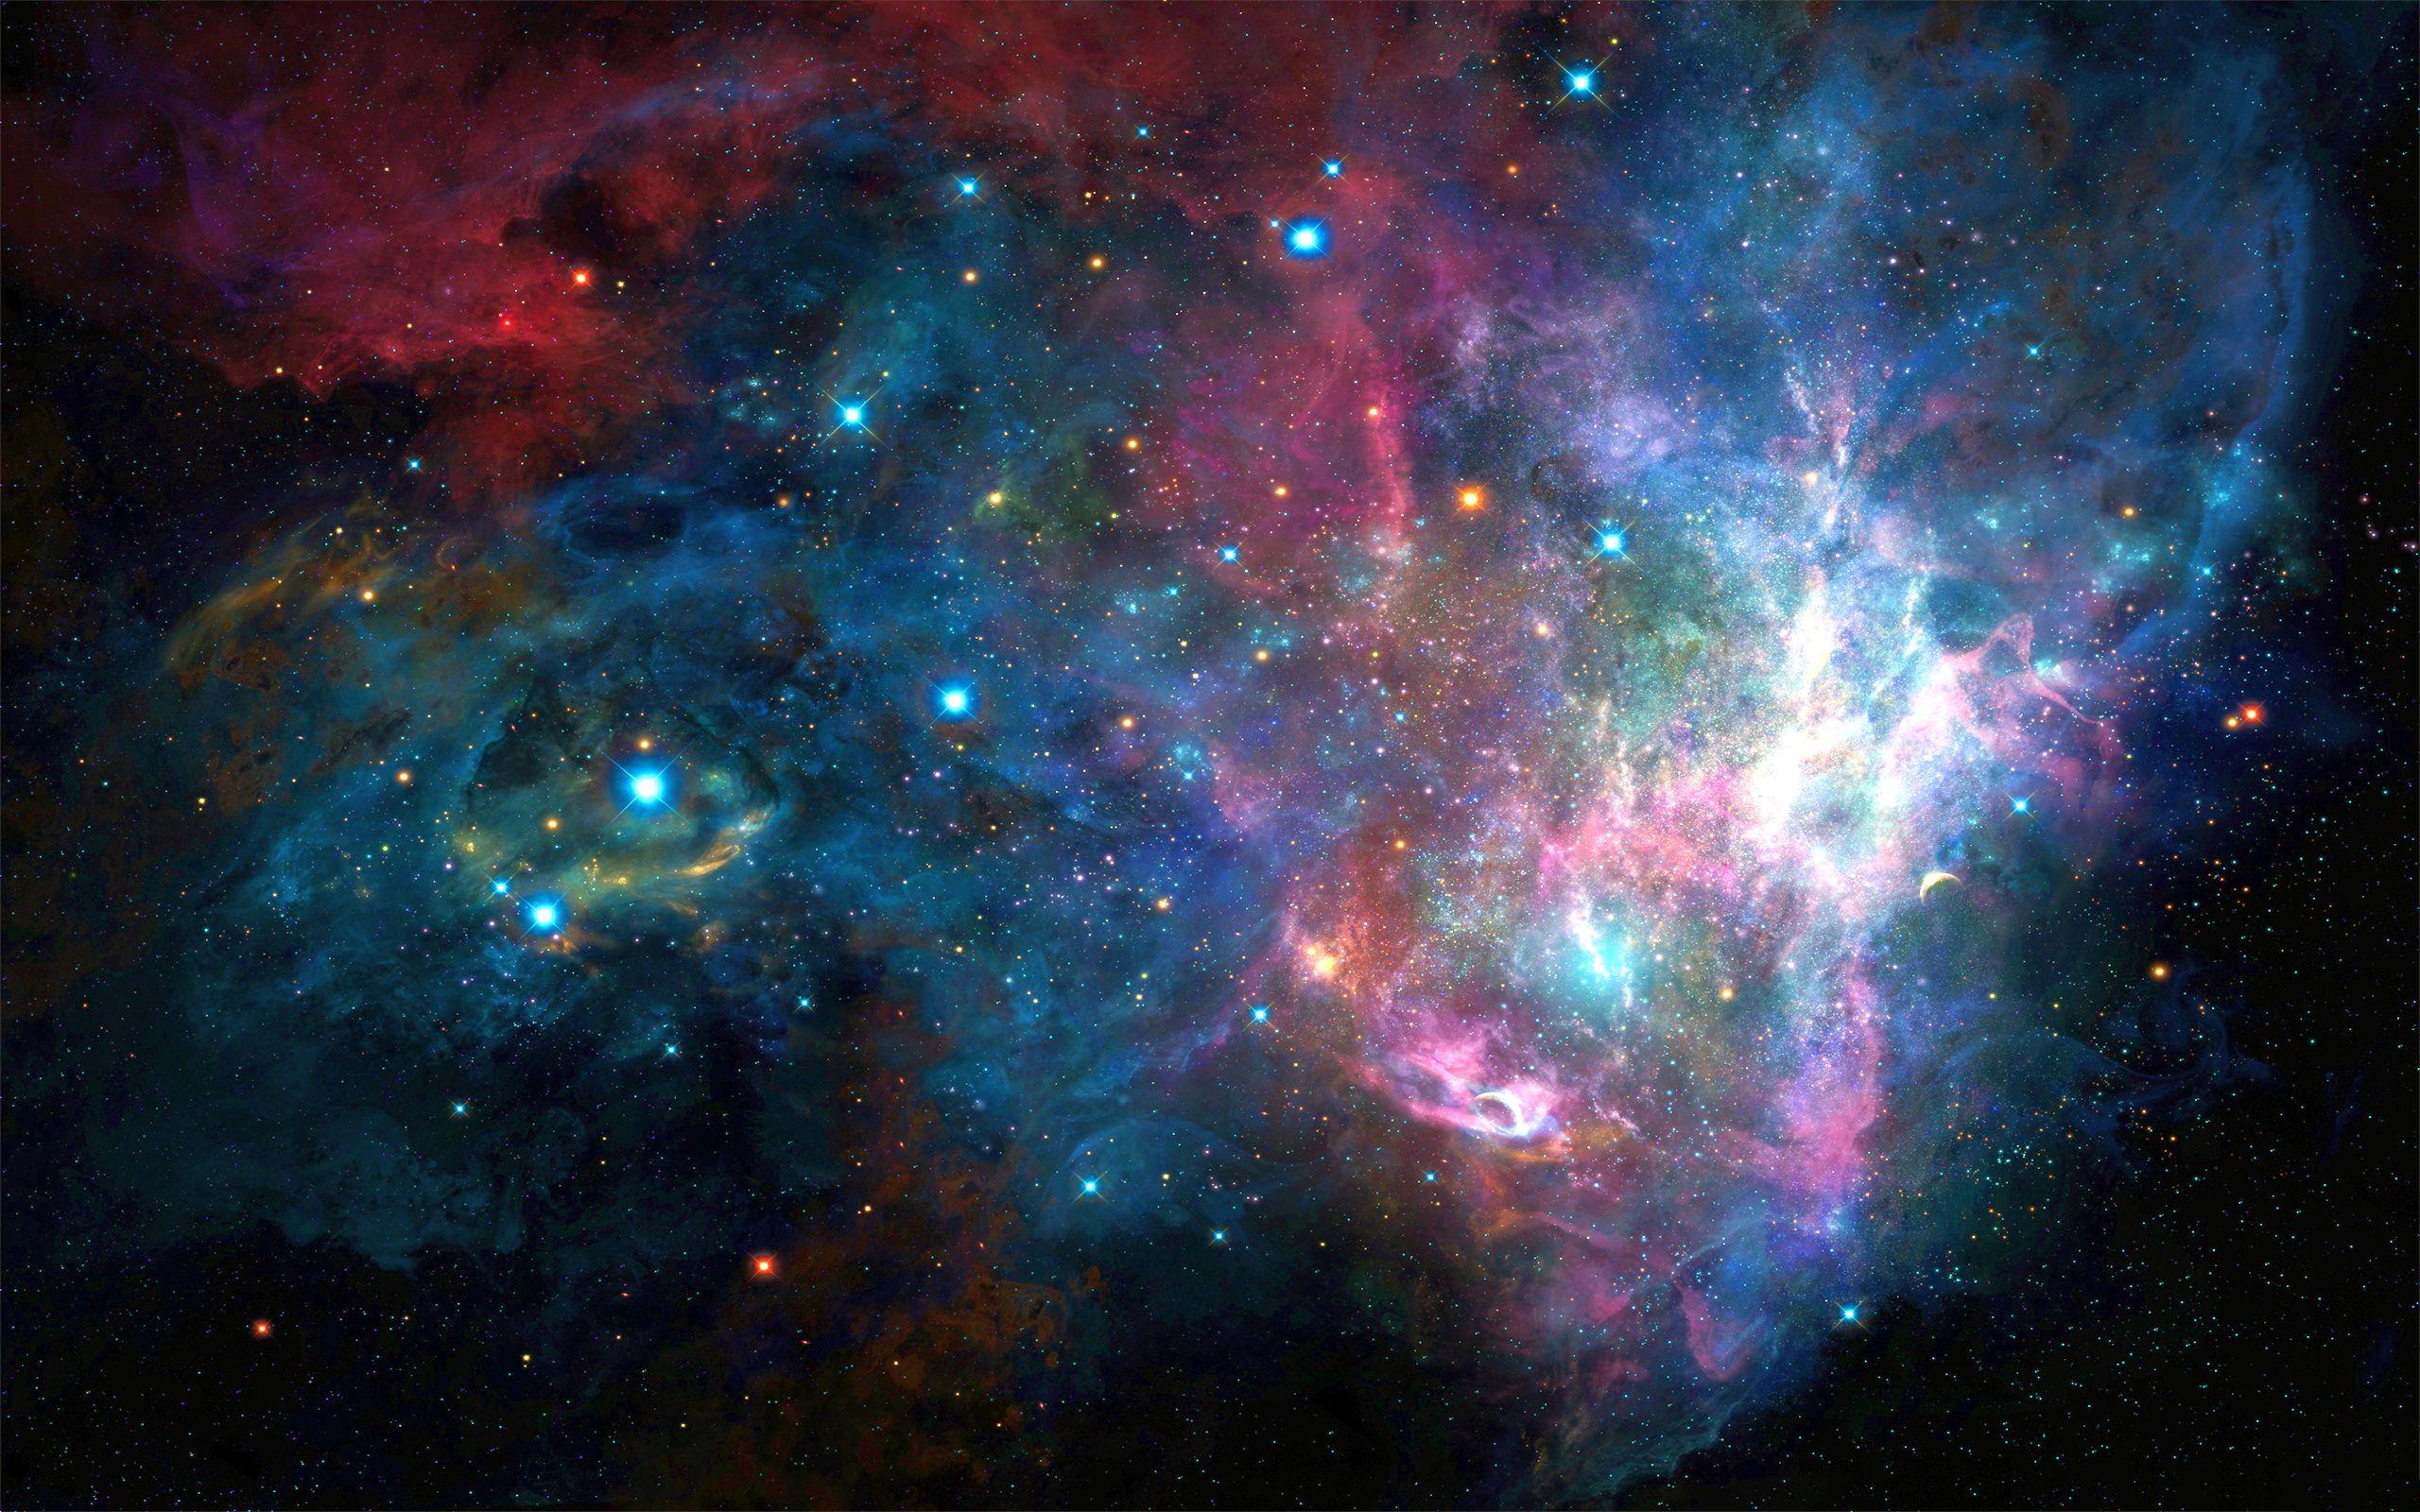 Bộ sưu tập Ultra HD Galaxy Wallpapers sẽ khiến bạn bị mê hoặc bởi những hình ảnh tuyệt đẹp về vũ trụ và các thiên hà trong hình chất lượng siêu cao. Nó sẽ khiến cho chiếc máy tính của bạn trở nên thật đặc biệt và ấn tượng hơn.